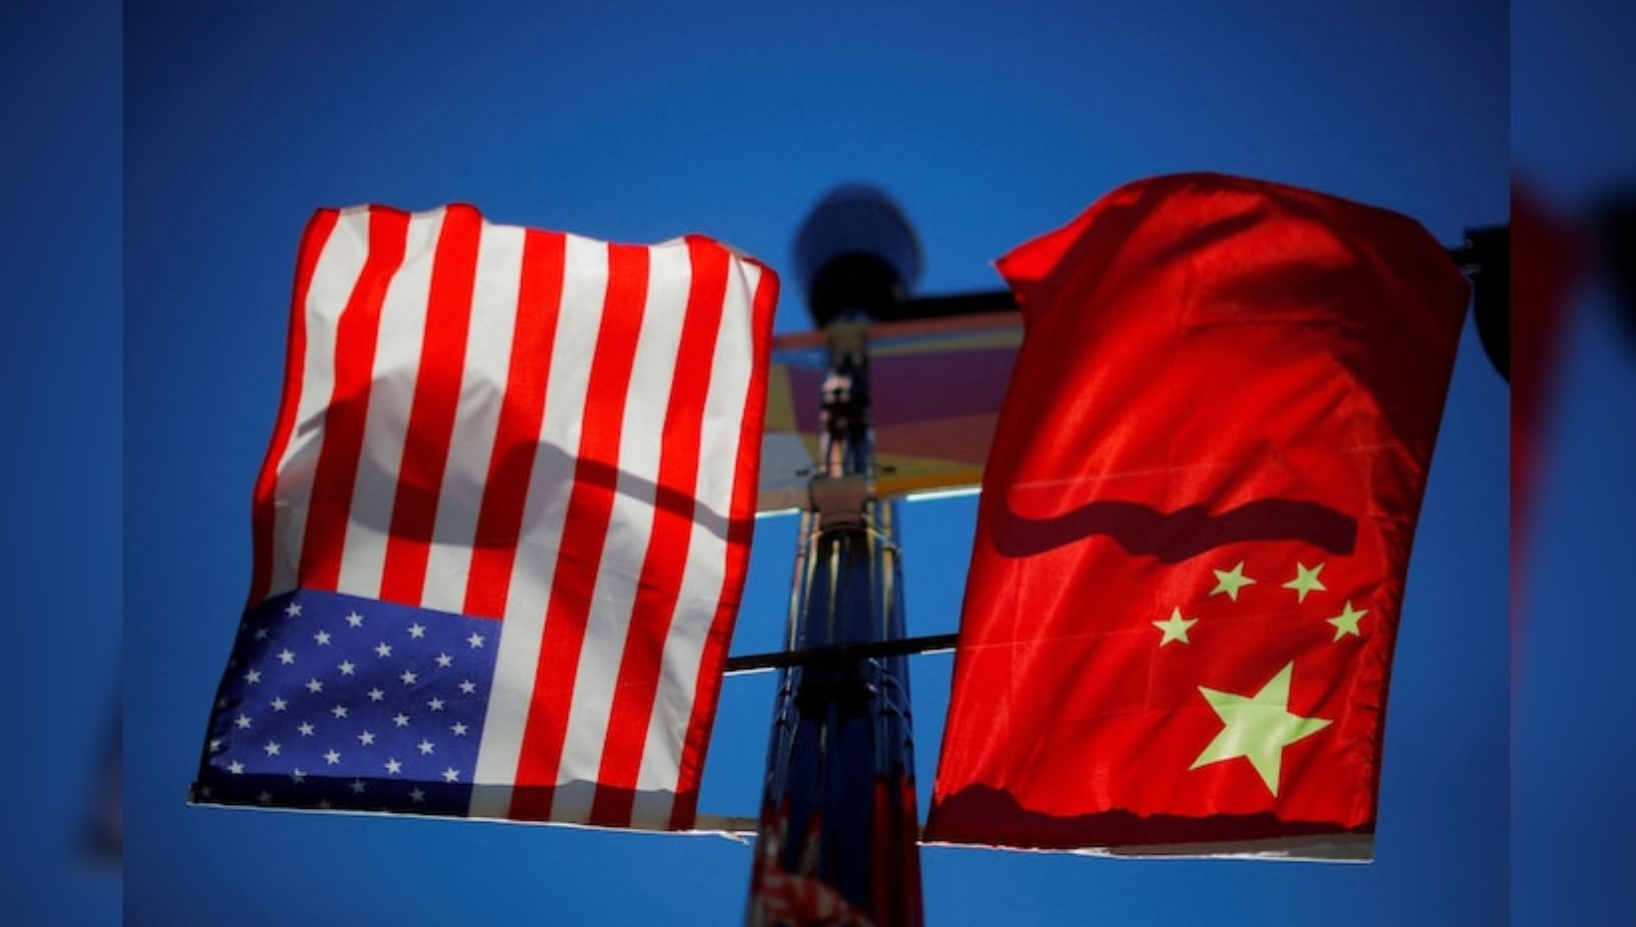 U.S. and China Clash Over Taiwan at Shangri-La Dialogue